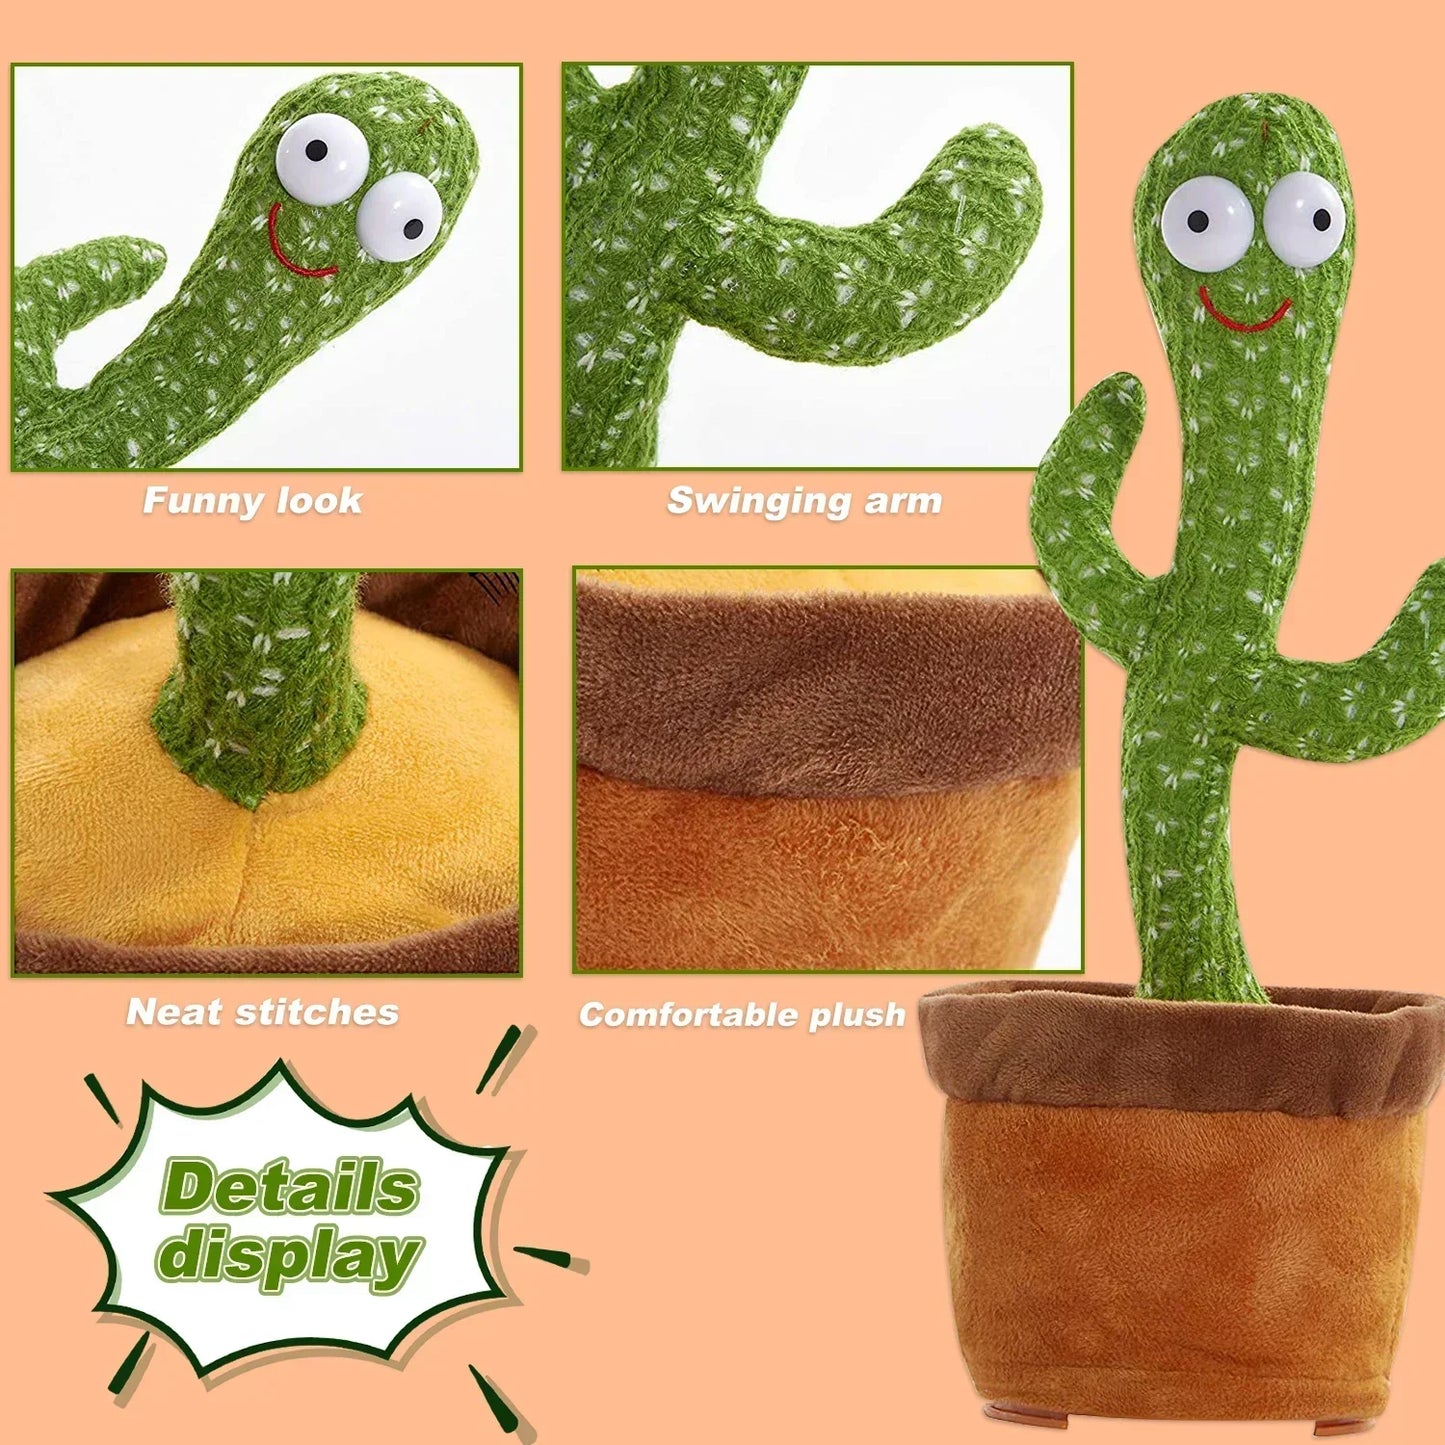 Niedliche Tanzende Kaktus-Puppe: Sprechen, Aufnehmen, Wiederholen